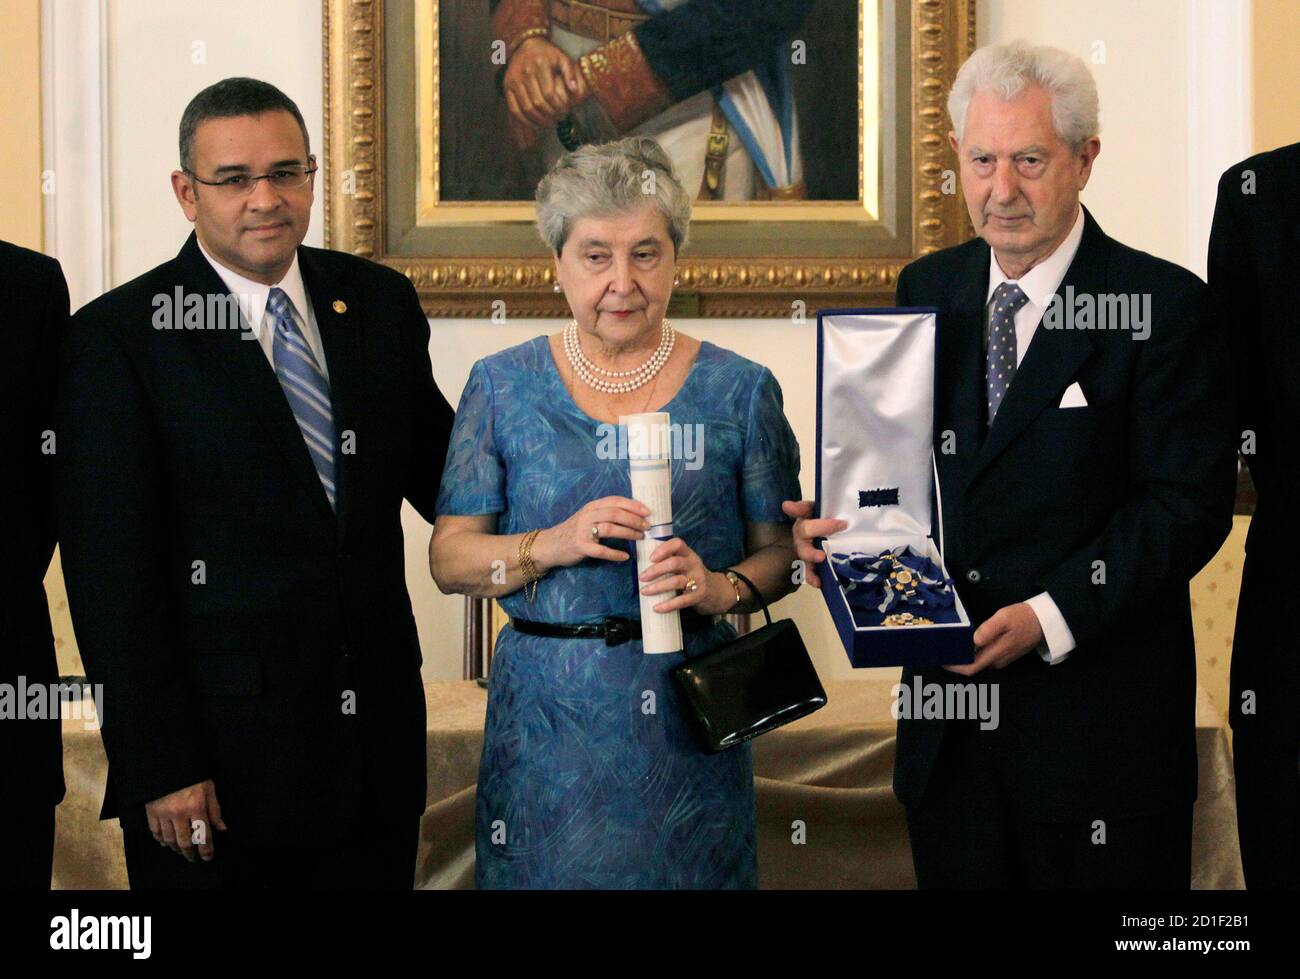 El presidente de el Salvador Mauricio Funes (L) entrega una medalla a Juan  Antonio Ellacuria (R), hermano del sacerdote jesuita nacido en España  Ignacio Ellacuria, y a su esposa Manuela Balenciaga, en